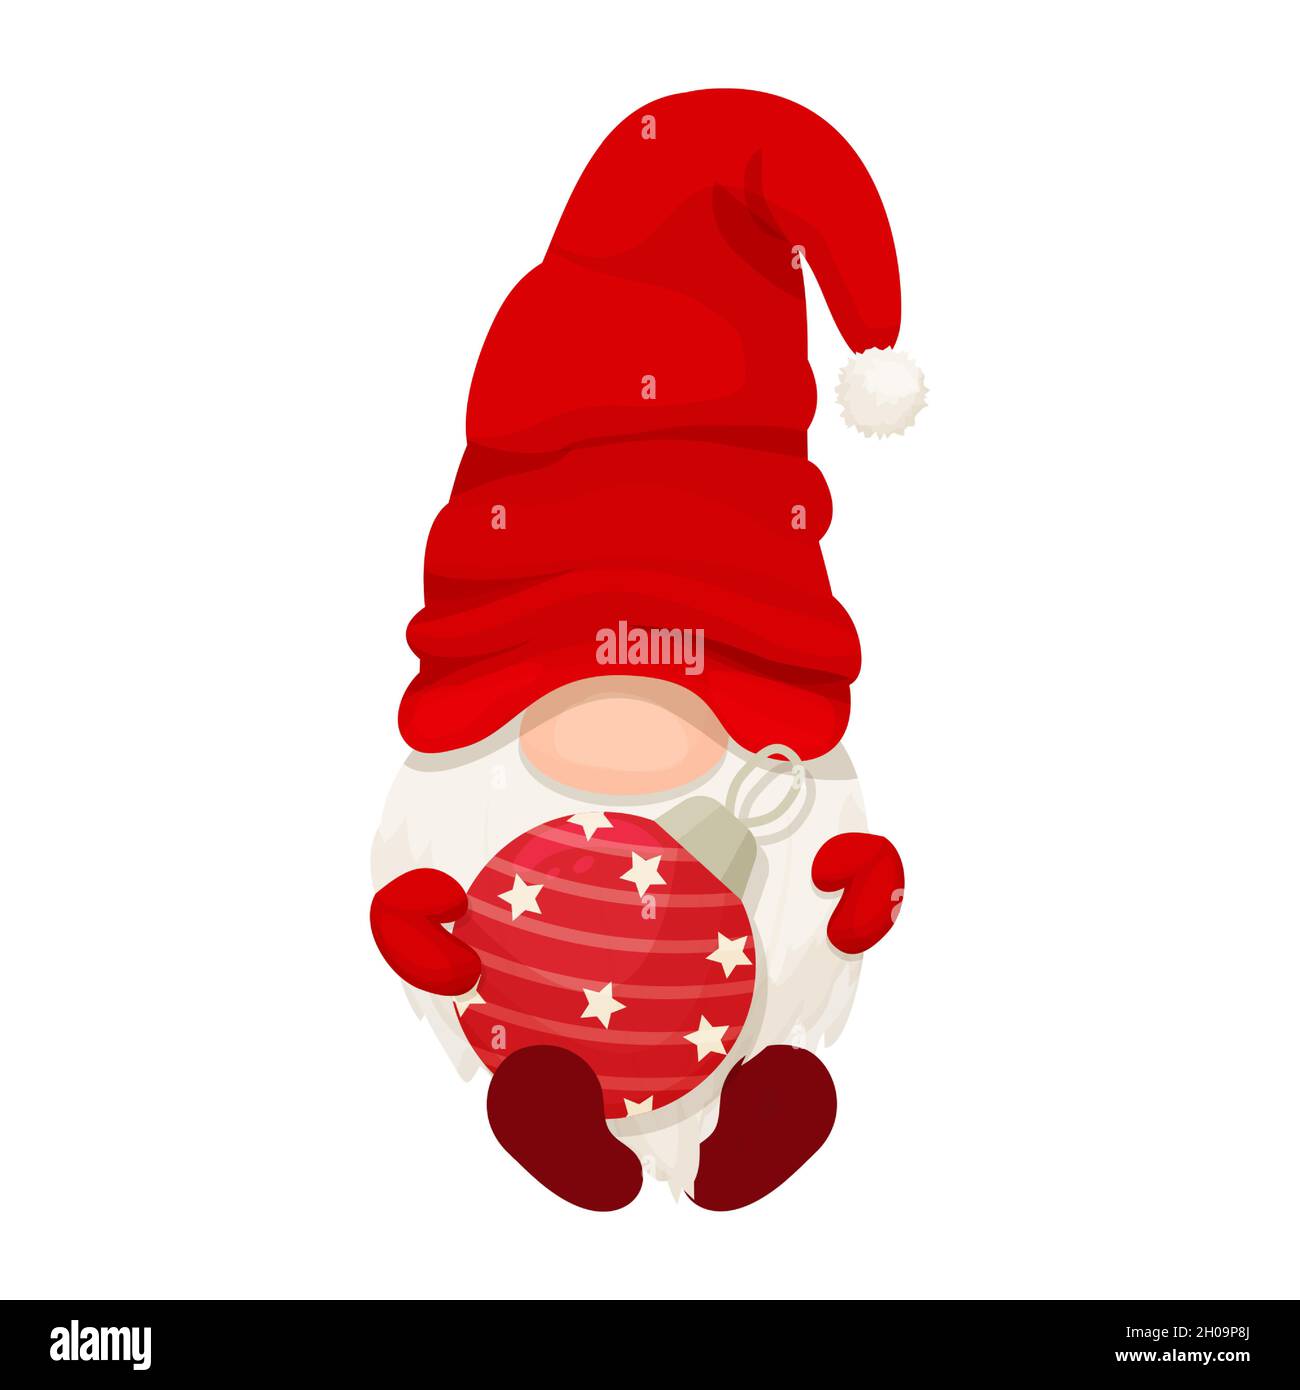 Simpatico gnome di Natale, elfo in cappello rosso in stile cartone animato, personaggio di saluto di Capodanno isolato su sfondo bianco. Tradizionale fata divertente con barba. Illustrazione vettoriale Illustrazione Vettoriale